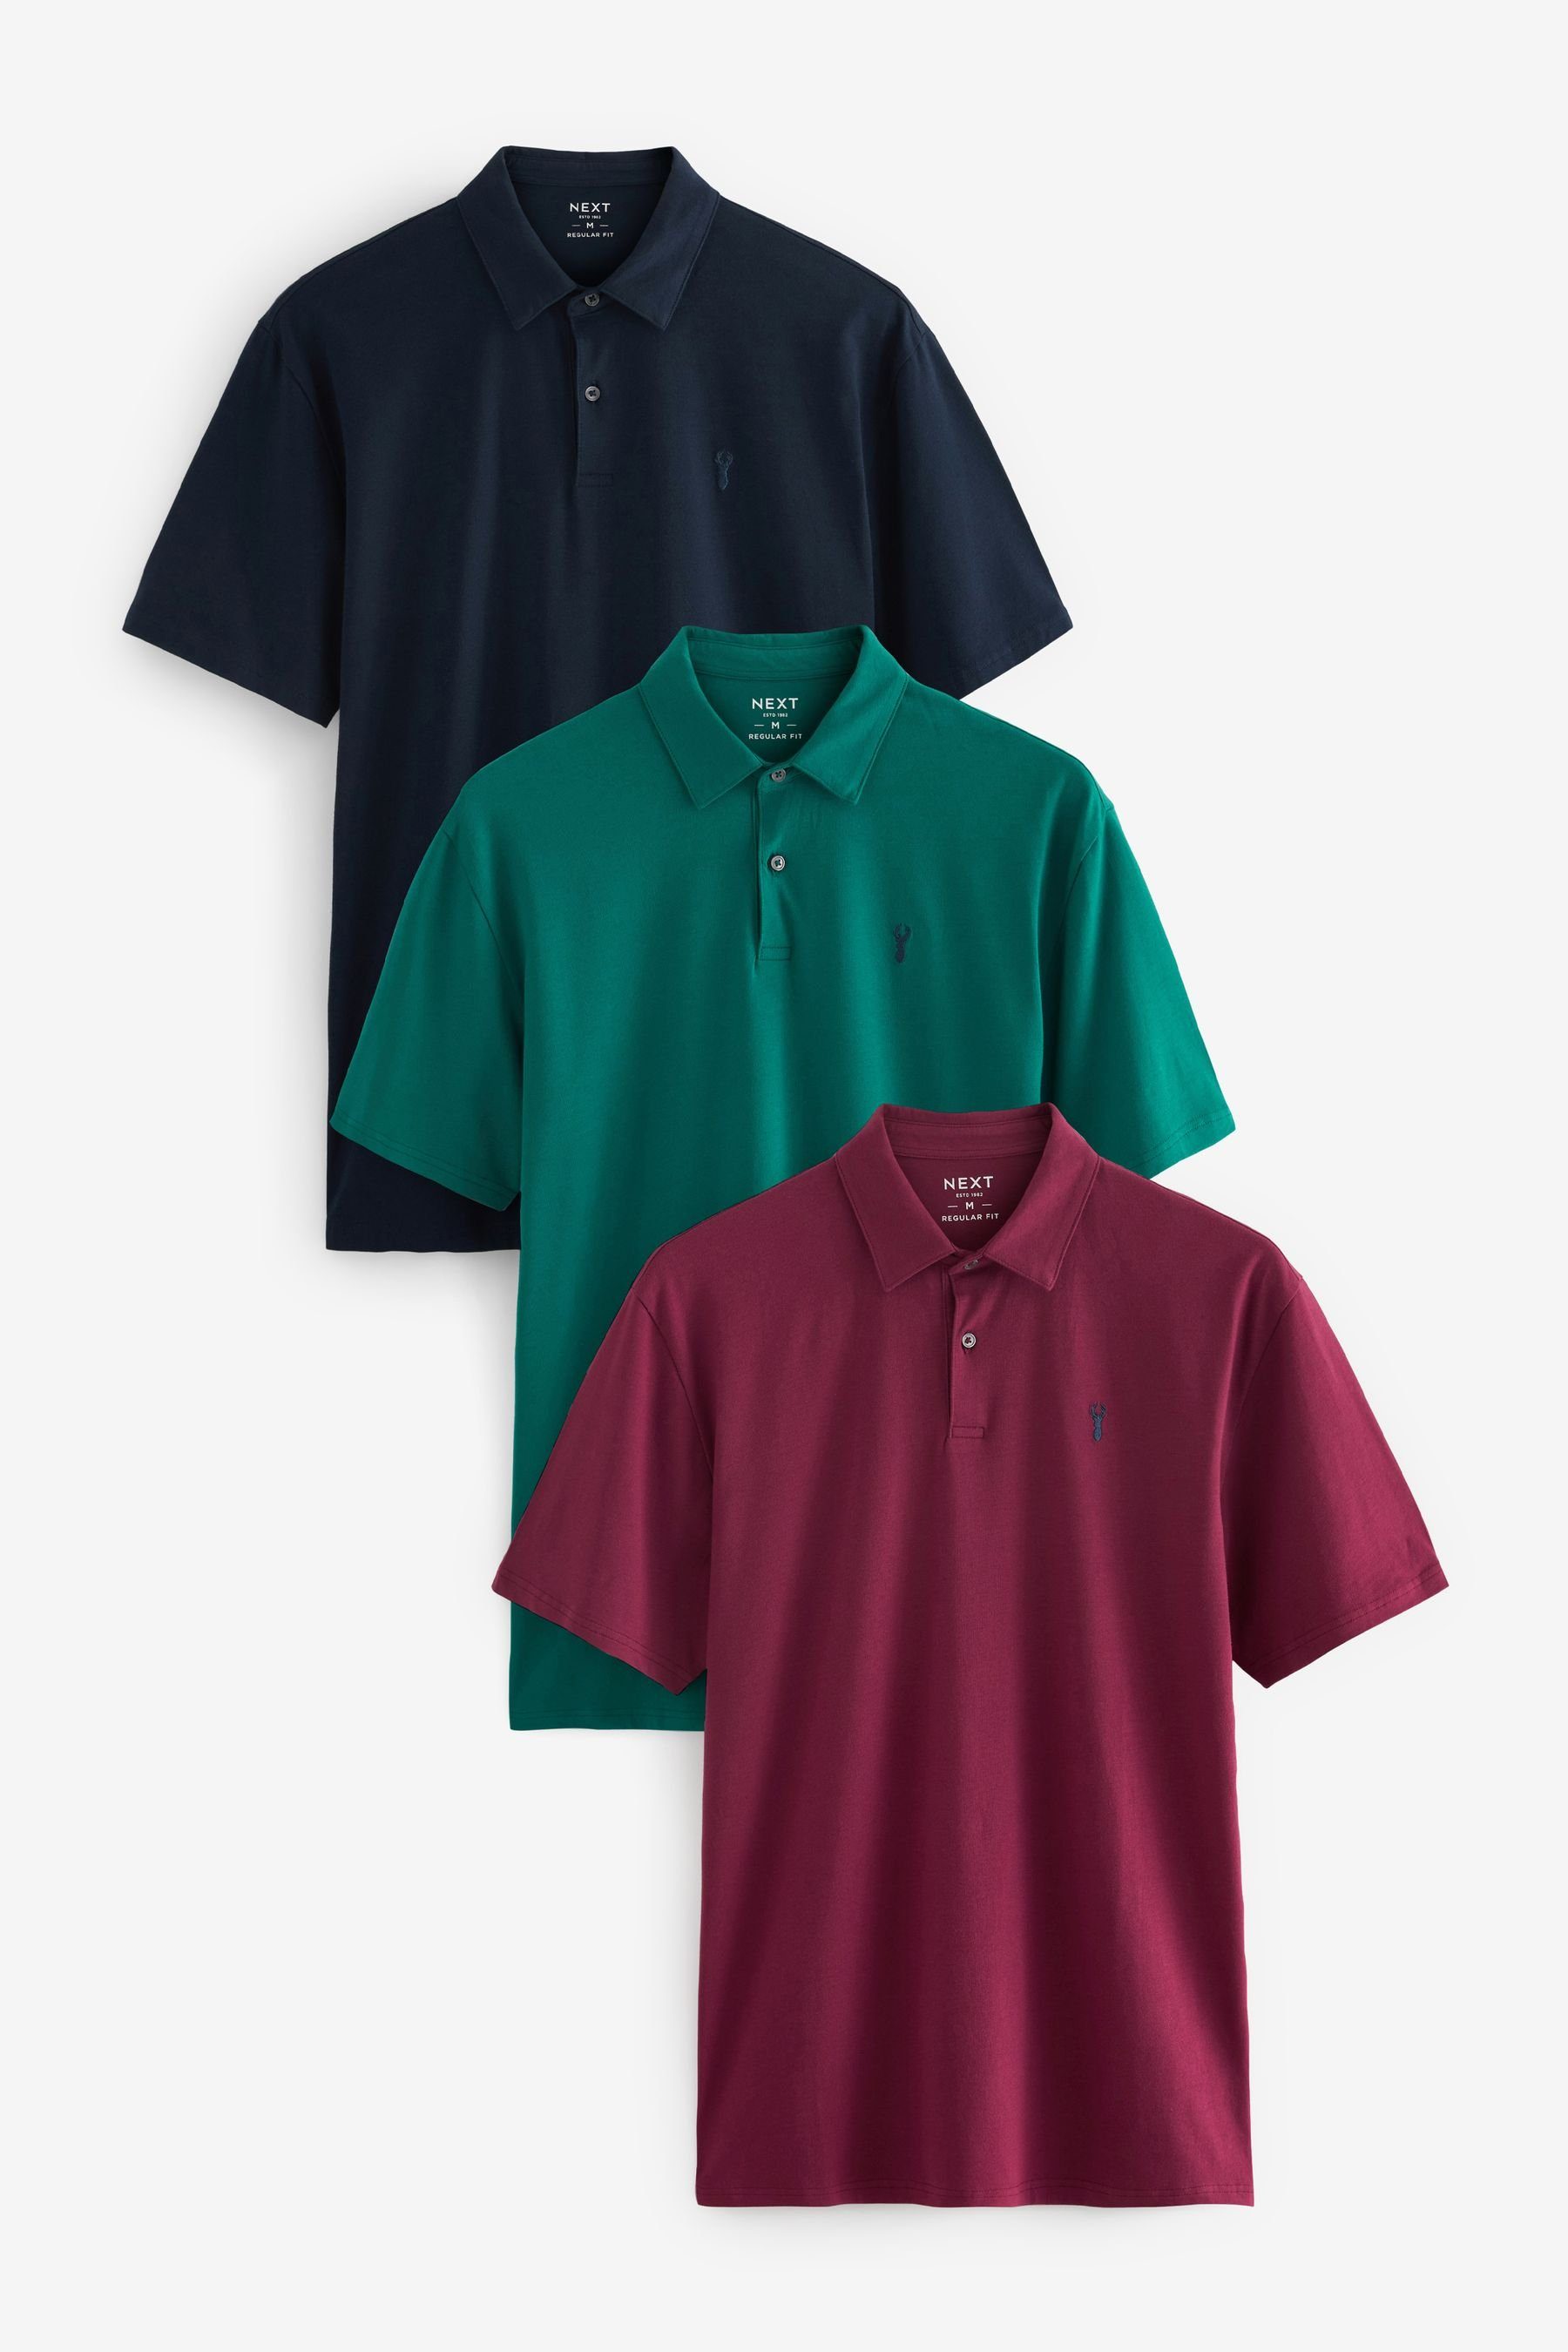 Next Poloshirt Poloshirts aus Jersey im 3er-Pack (3-tlg) Navy/Teal Blue/Pink